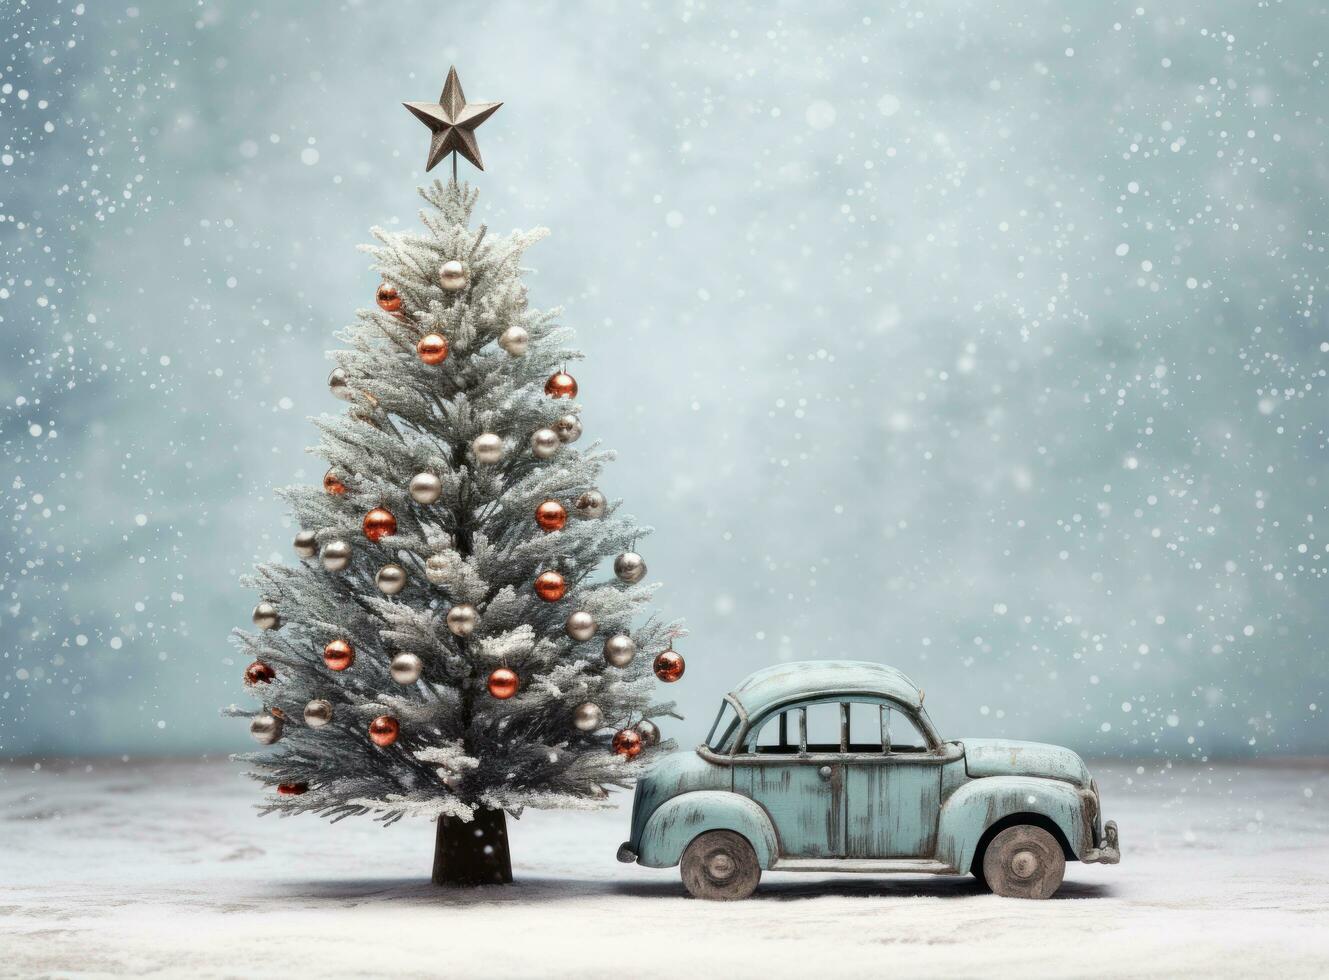 Christmas car with Christmas tree photo